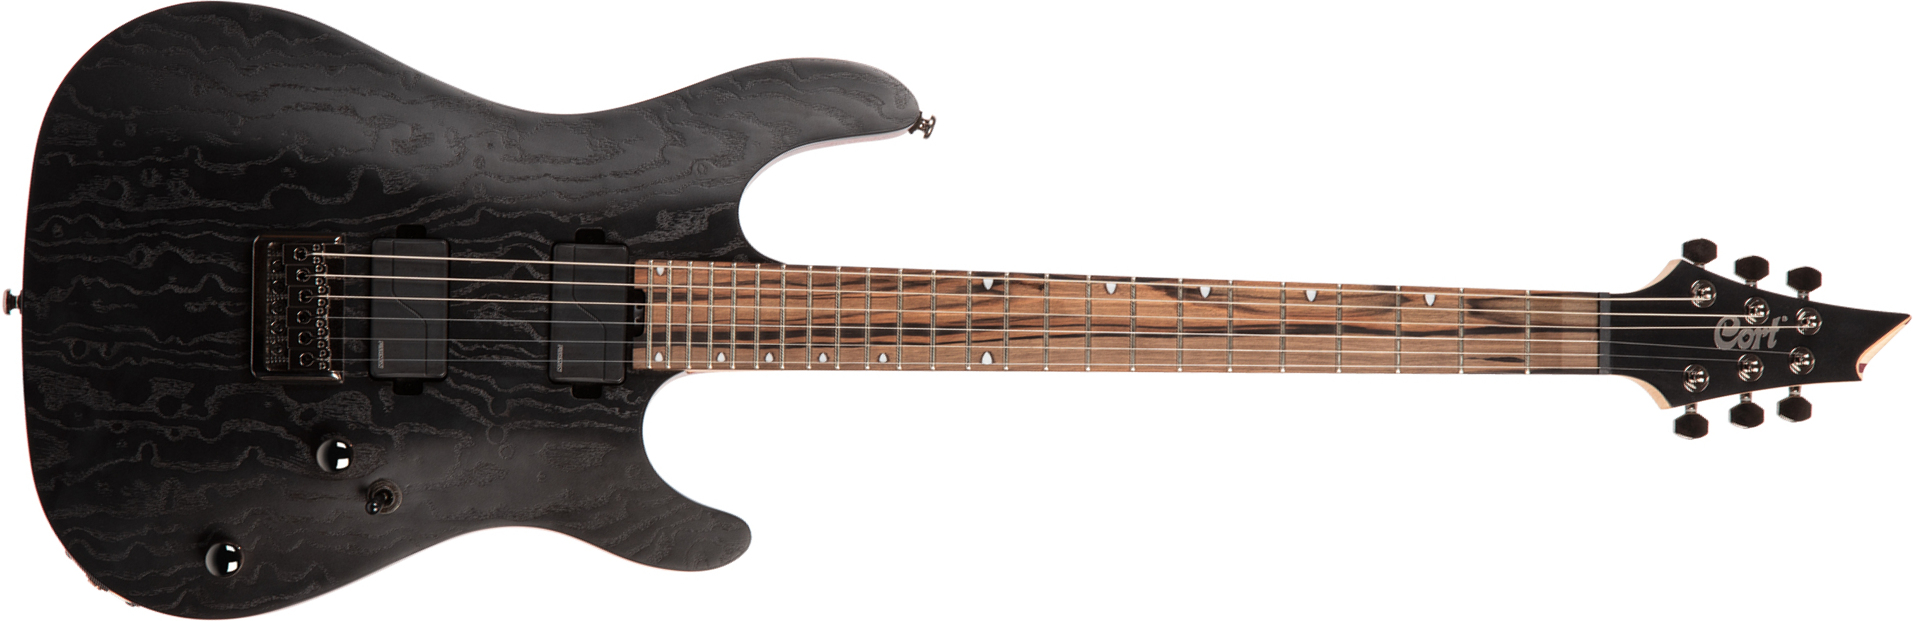 Cort Kx500 Hh Fishman Fluence Ht Eb - Etched Black - Str shape electric guitar - Main picture